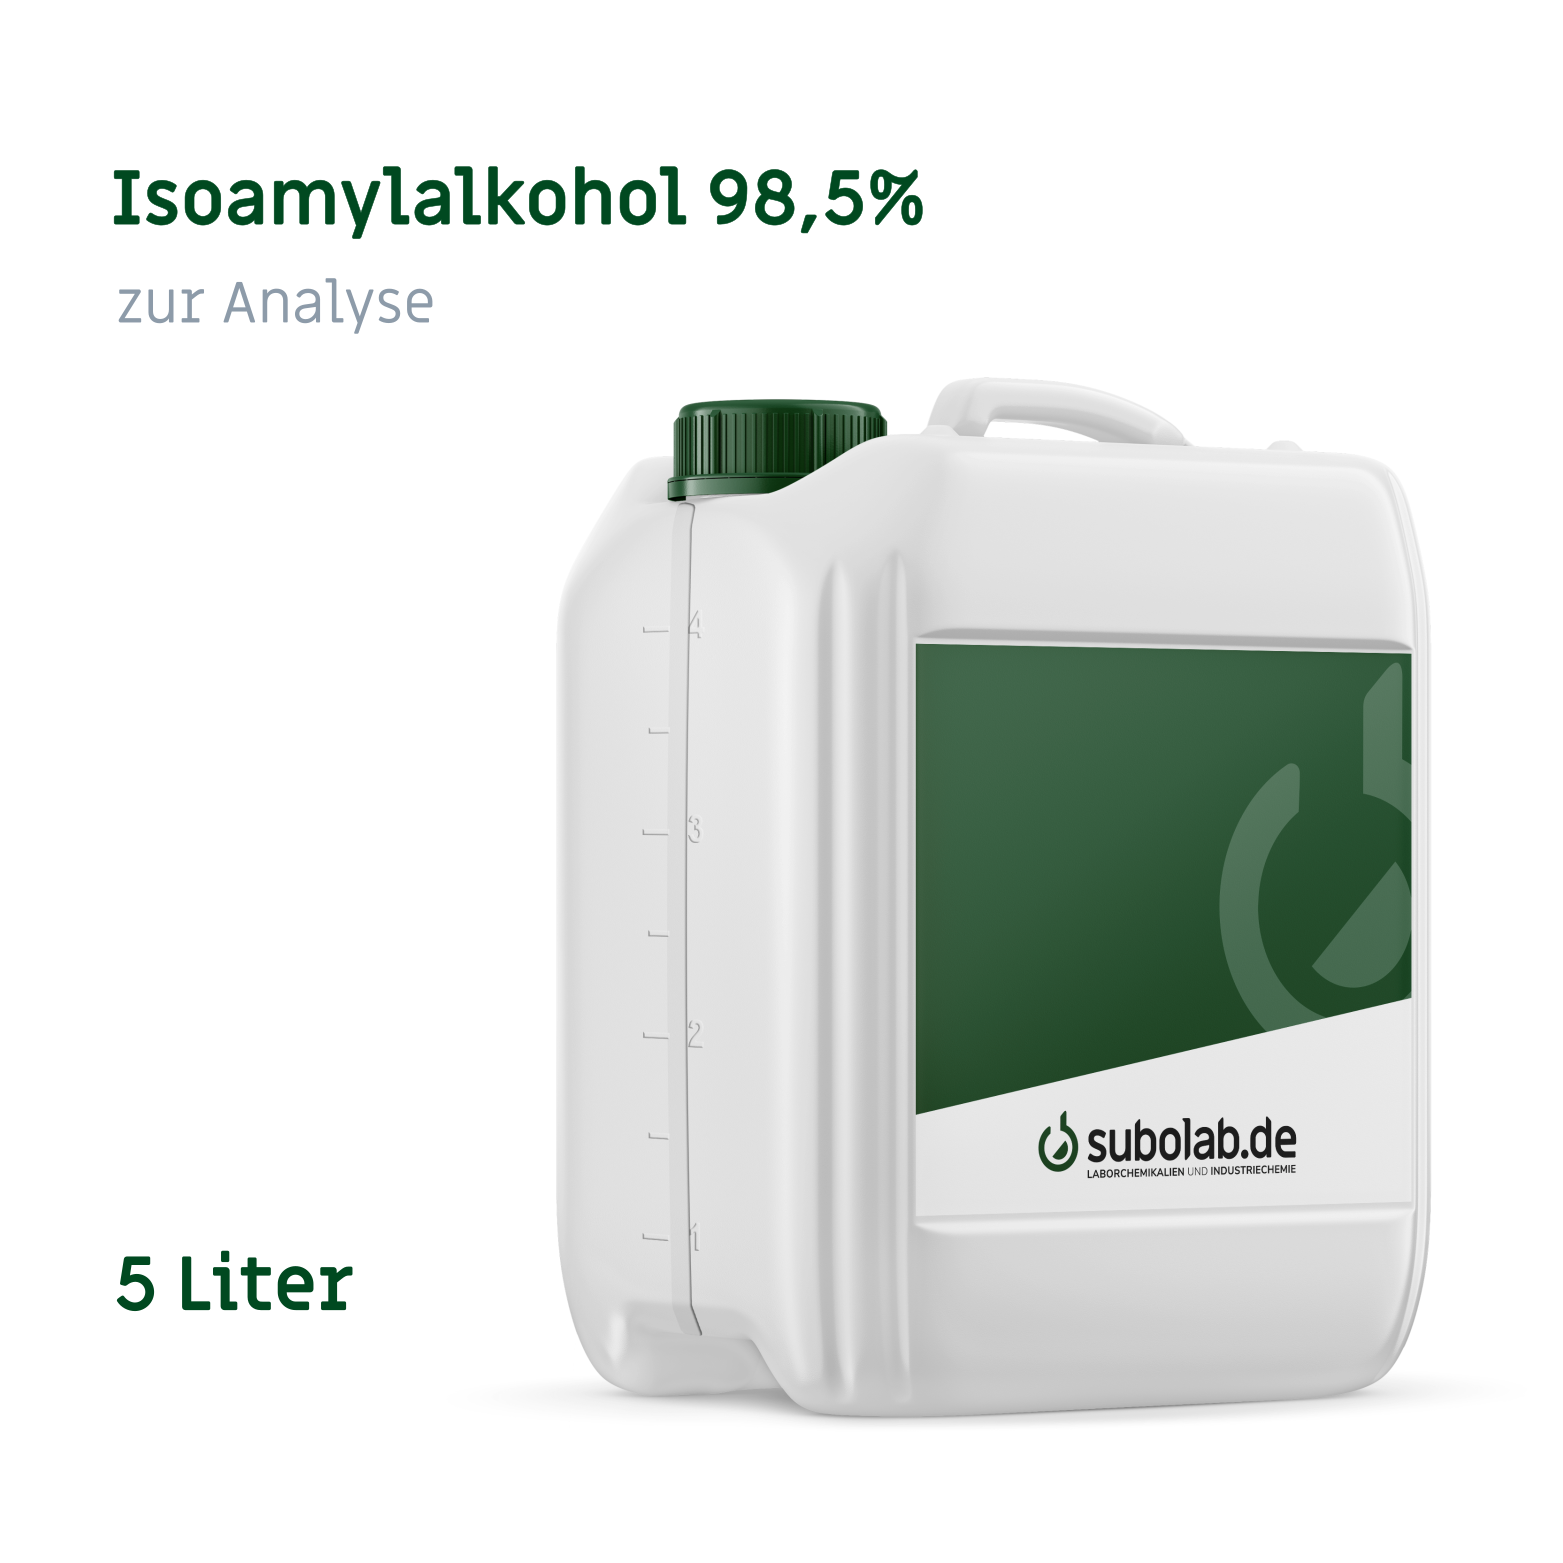 Bild von Isoamylalkohol 98,5% zur Analyse (5 Liter)